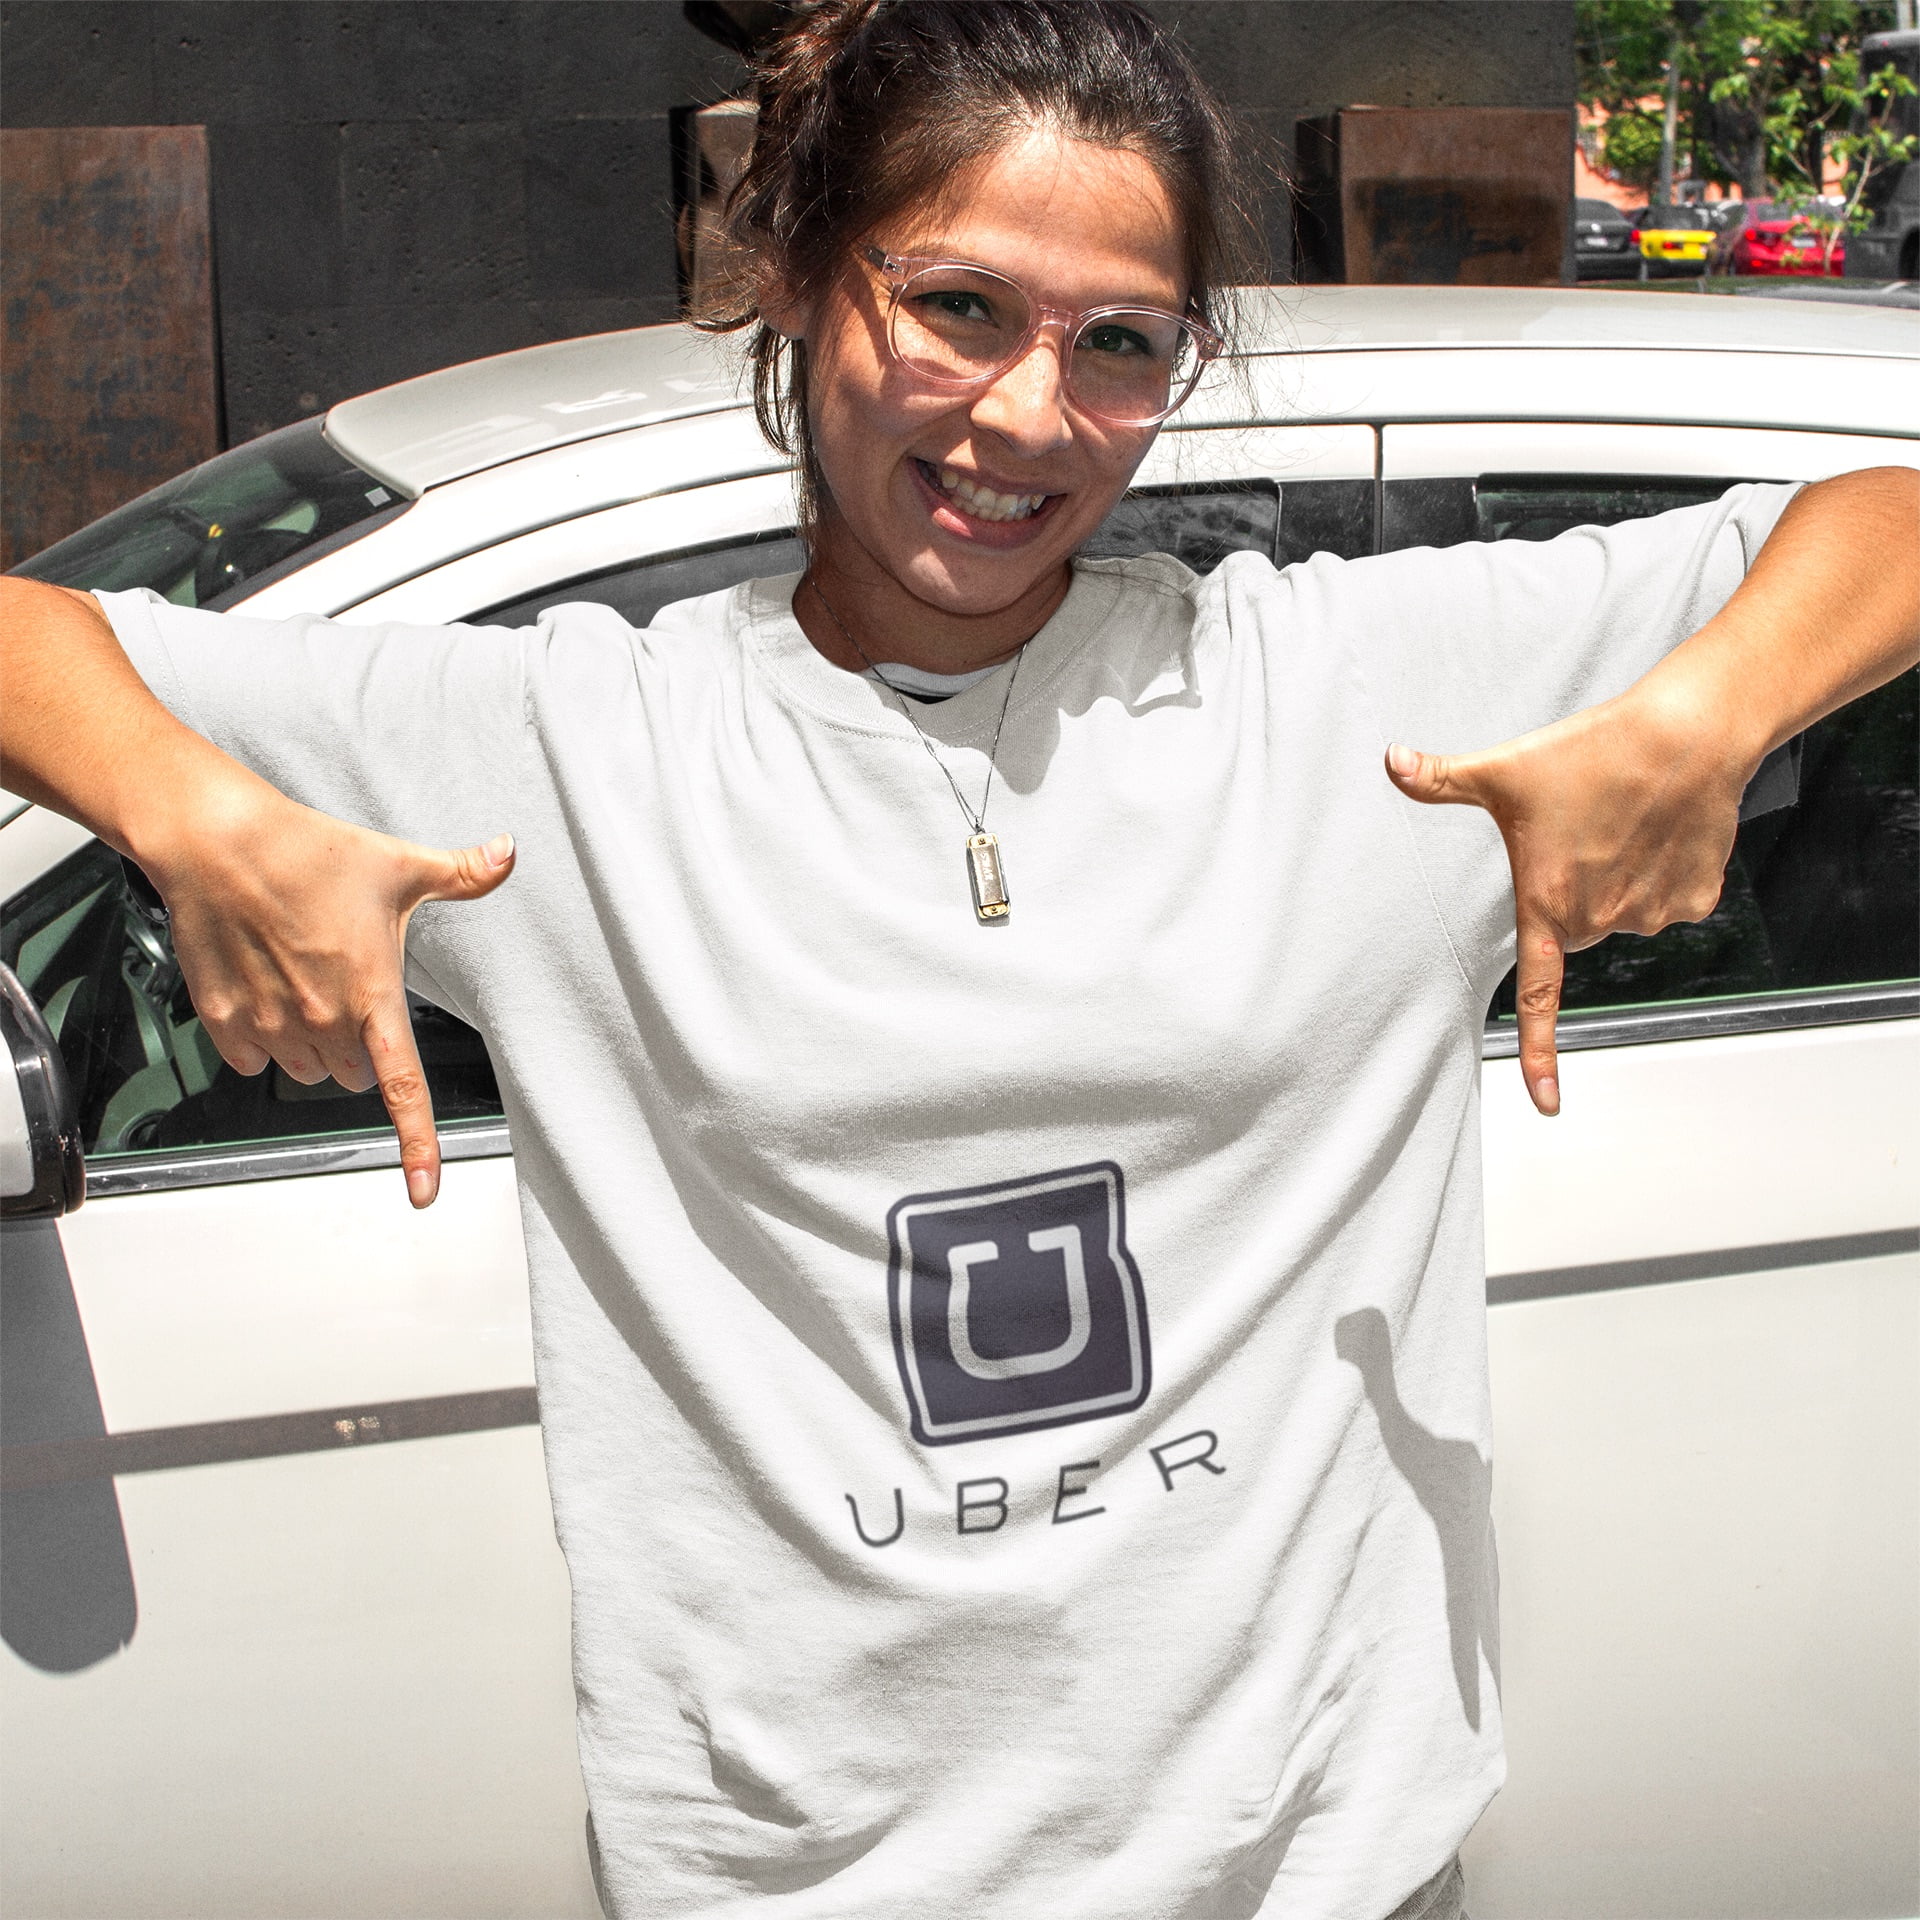 La Cour d'appel considère Uber davantage comme un employeur mais attend la décision finale de la Cour suprême.